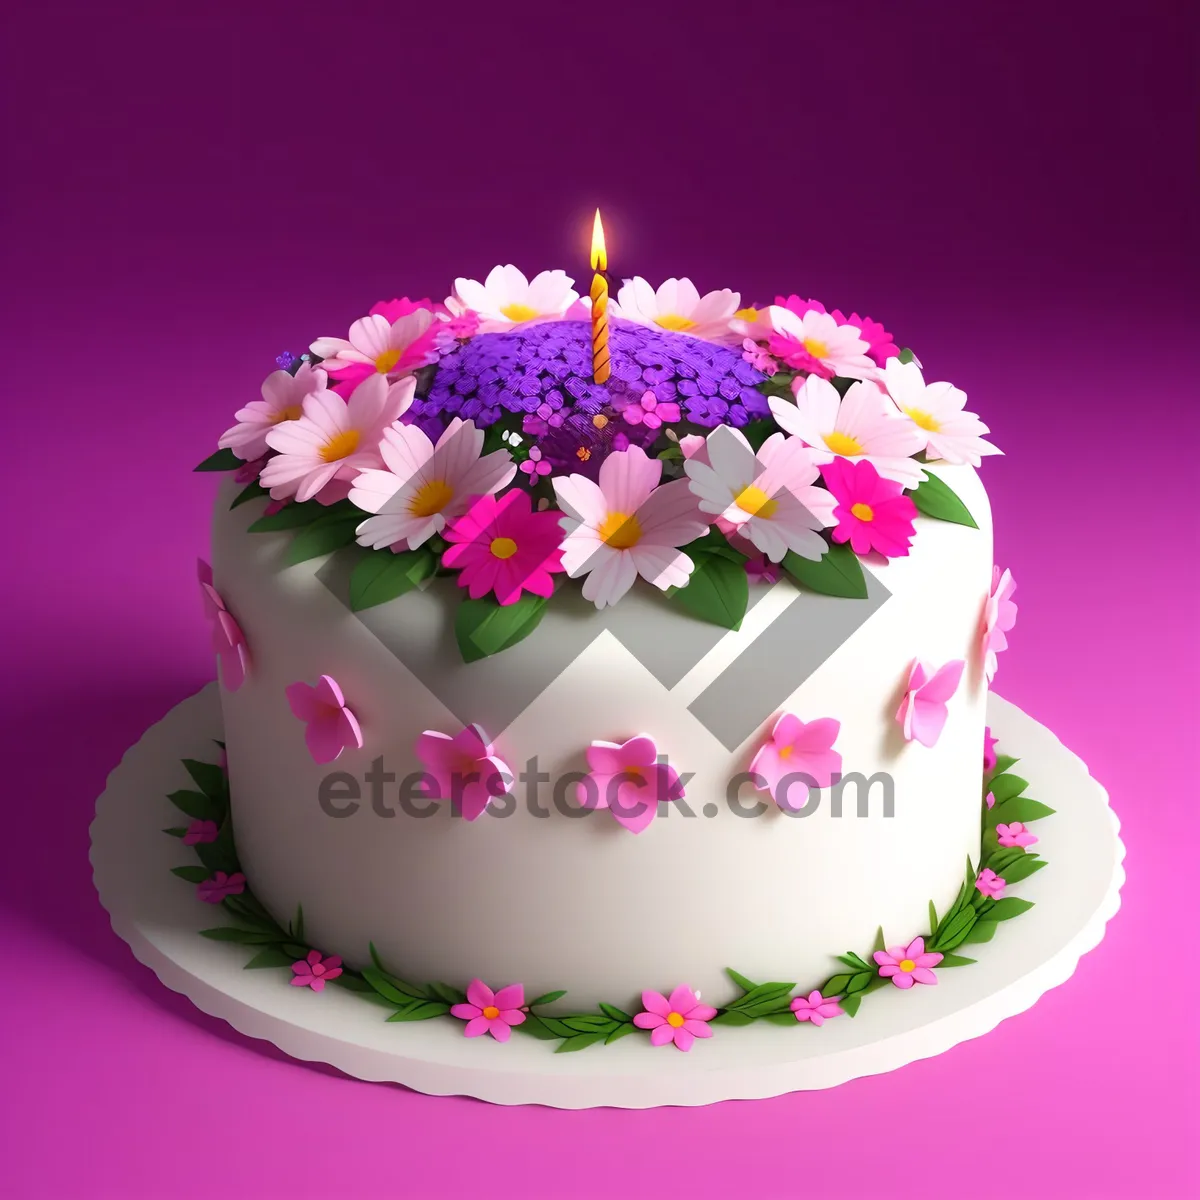 Picture of Delicious Polka Dot Confetti Cake Decoration